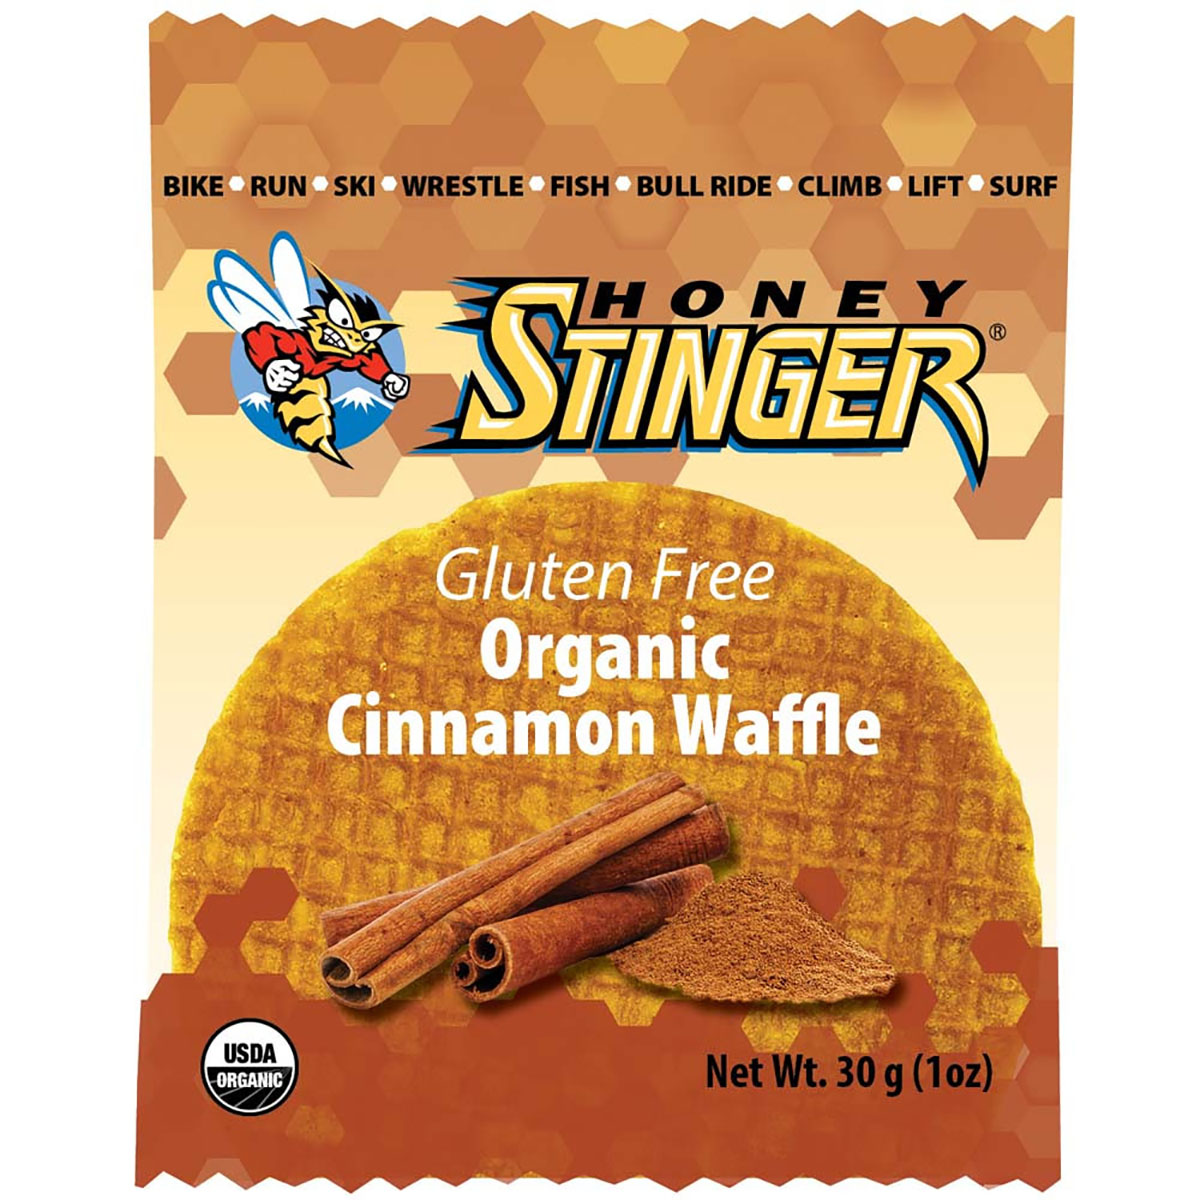 Honey Stinger Gluten Free Waffle, , large image number null